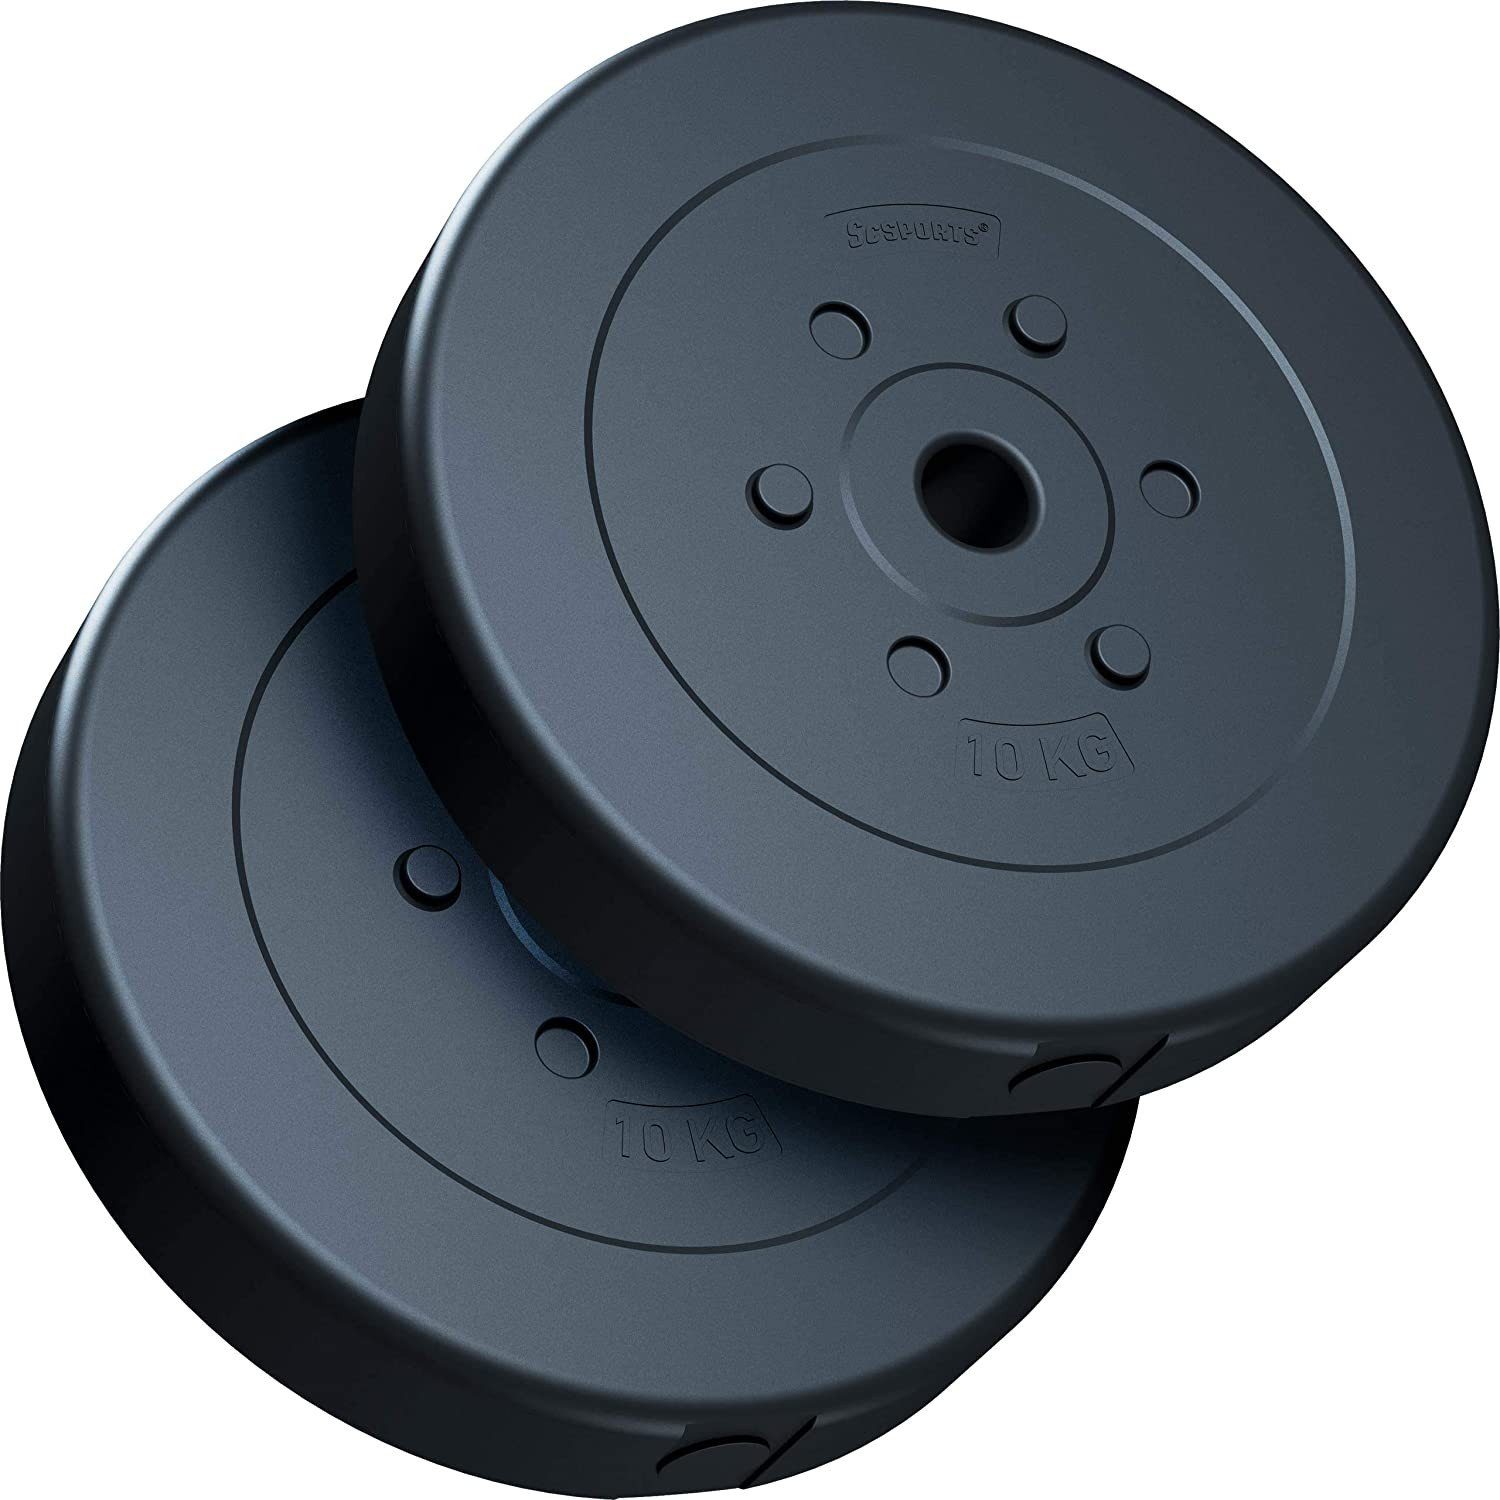 (10002983-tlg) ScSPORTS® Gewichte, 20 Set Kunststoff Gewichtsscheiben Hantelscheiben kg 30/31mm